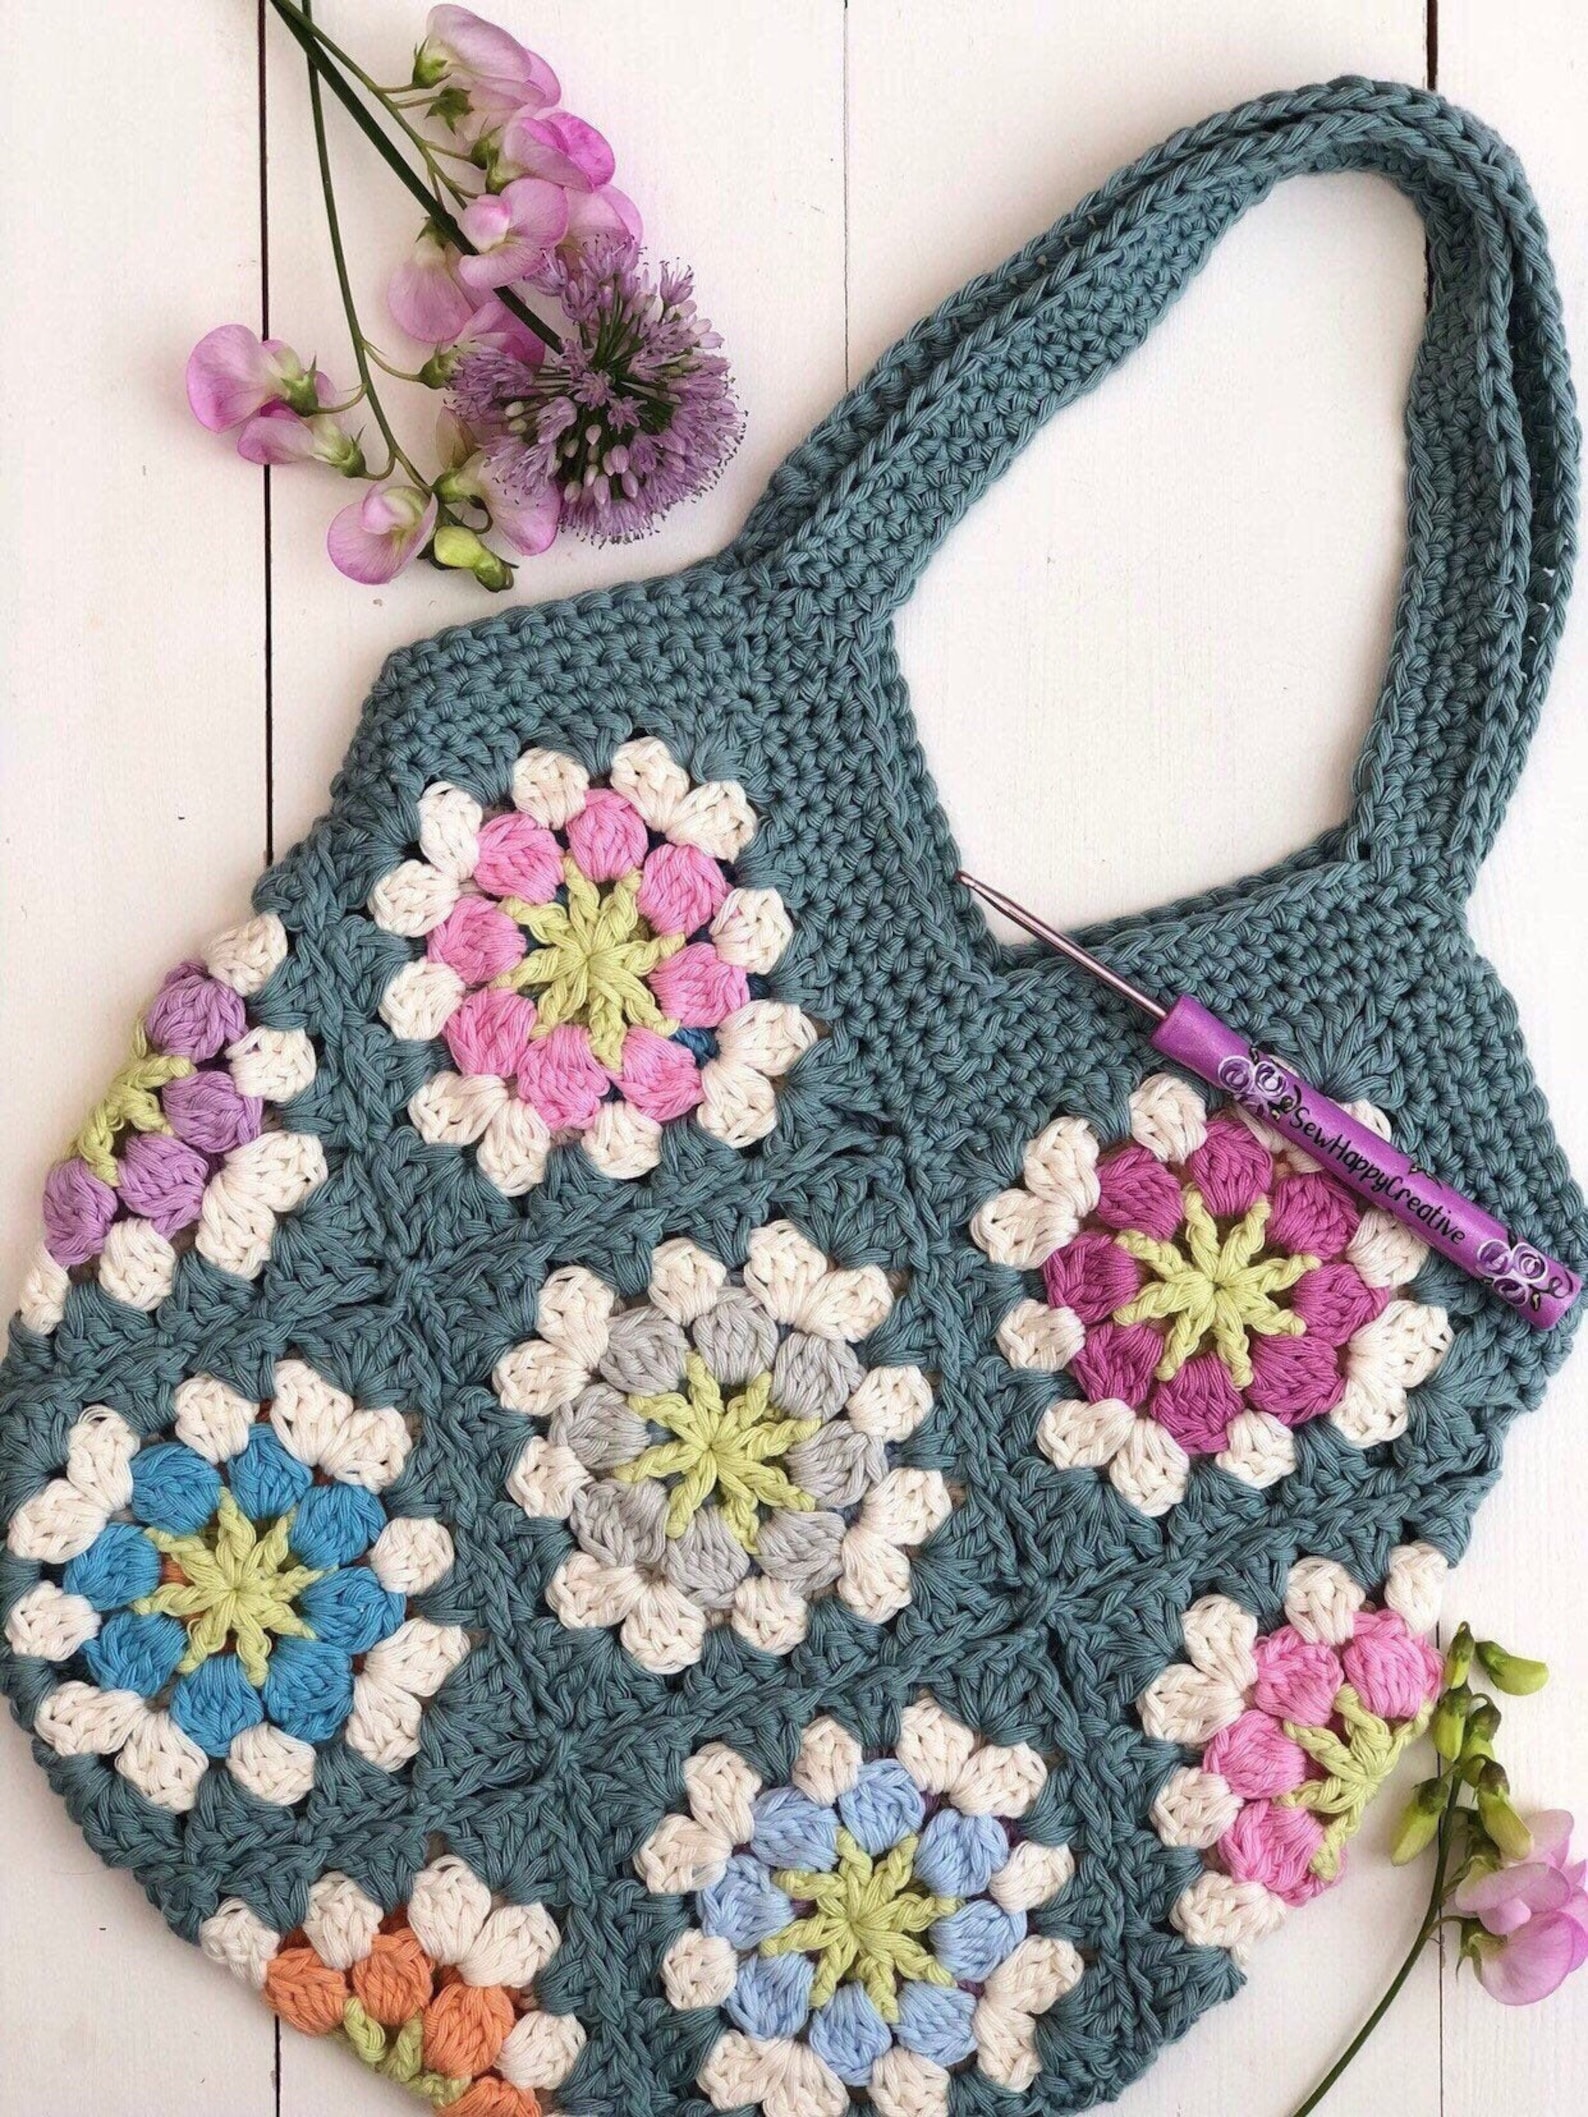 Flower Festival Bag Granny Square Crochet Patternbeach Bag | Etsy